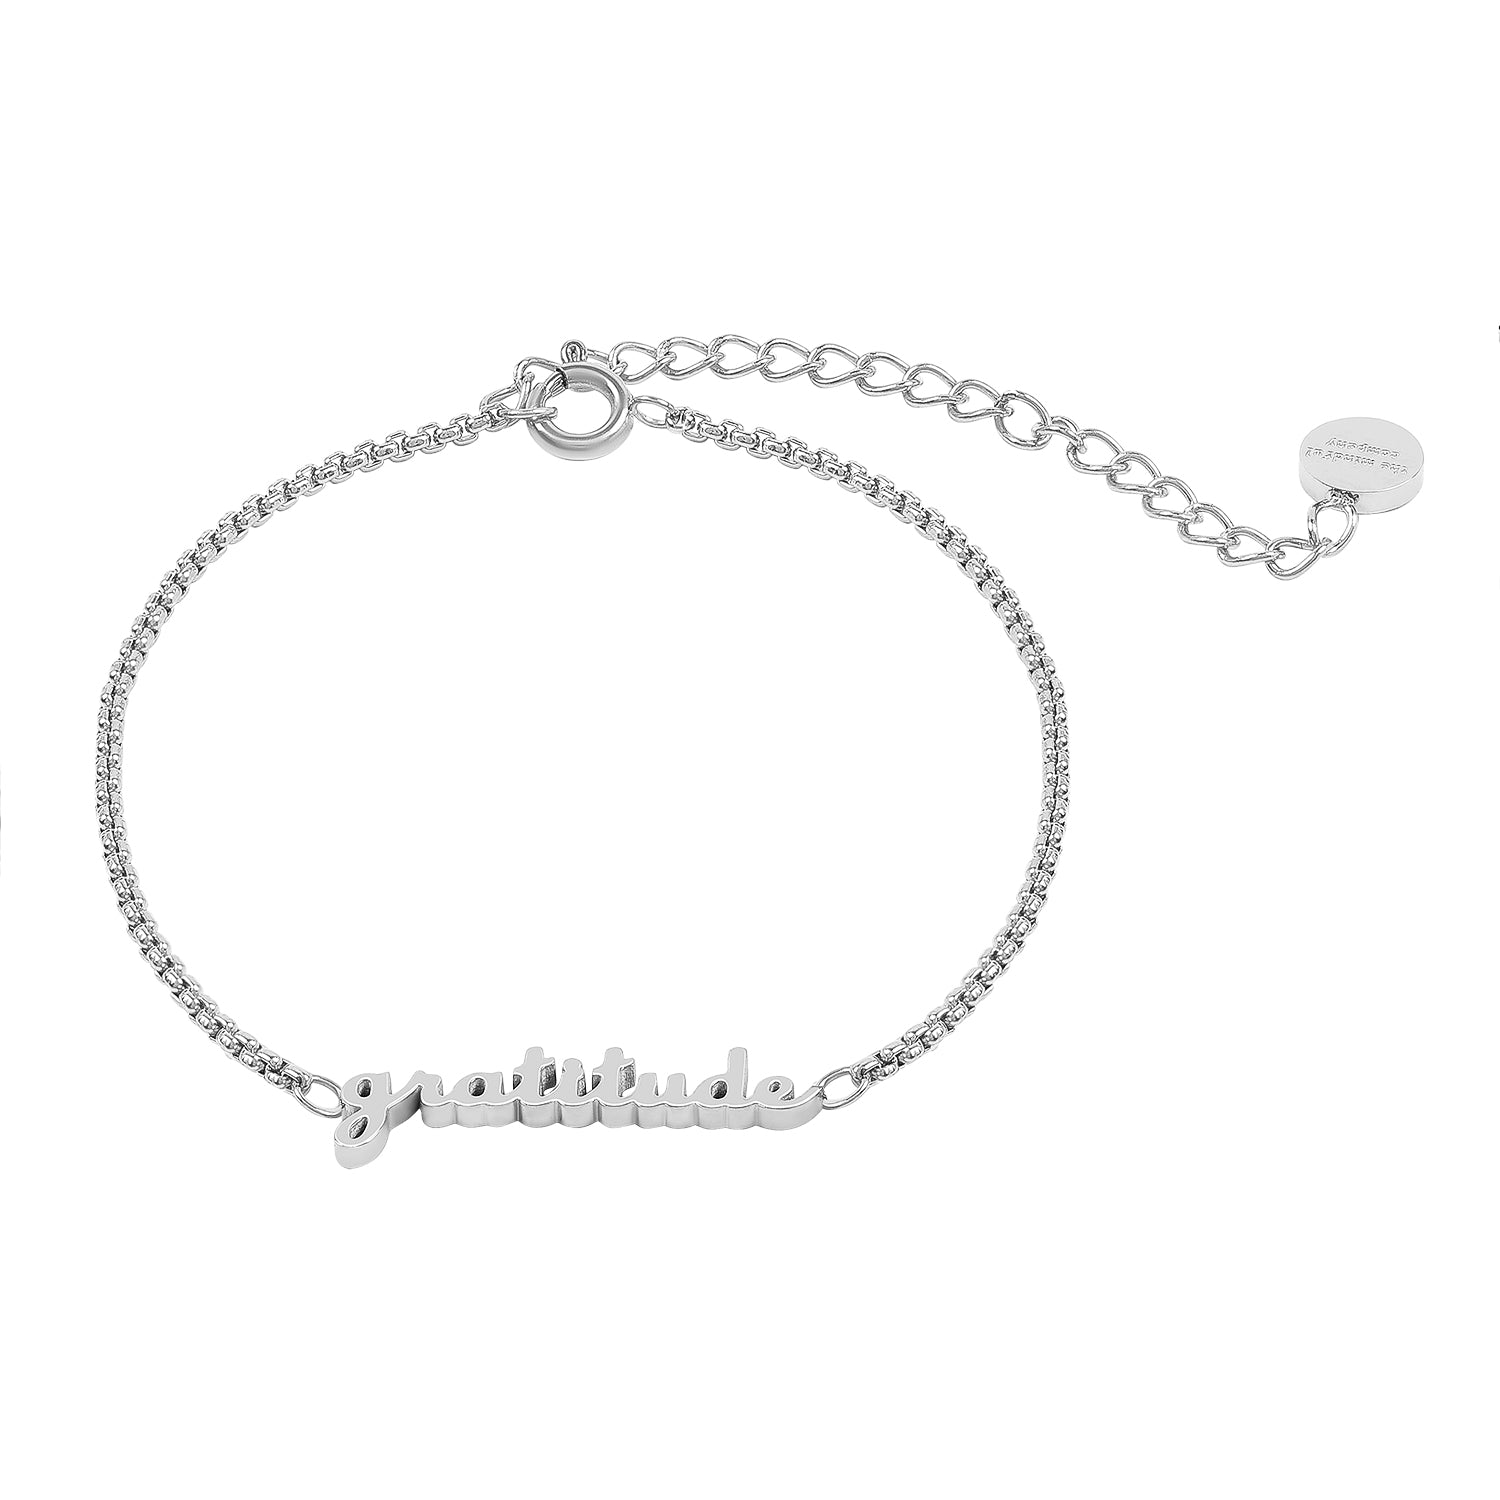 Silver Gratitude Bracelet – The Mindful Company